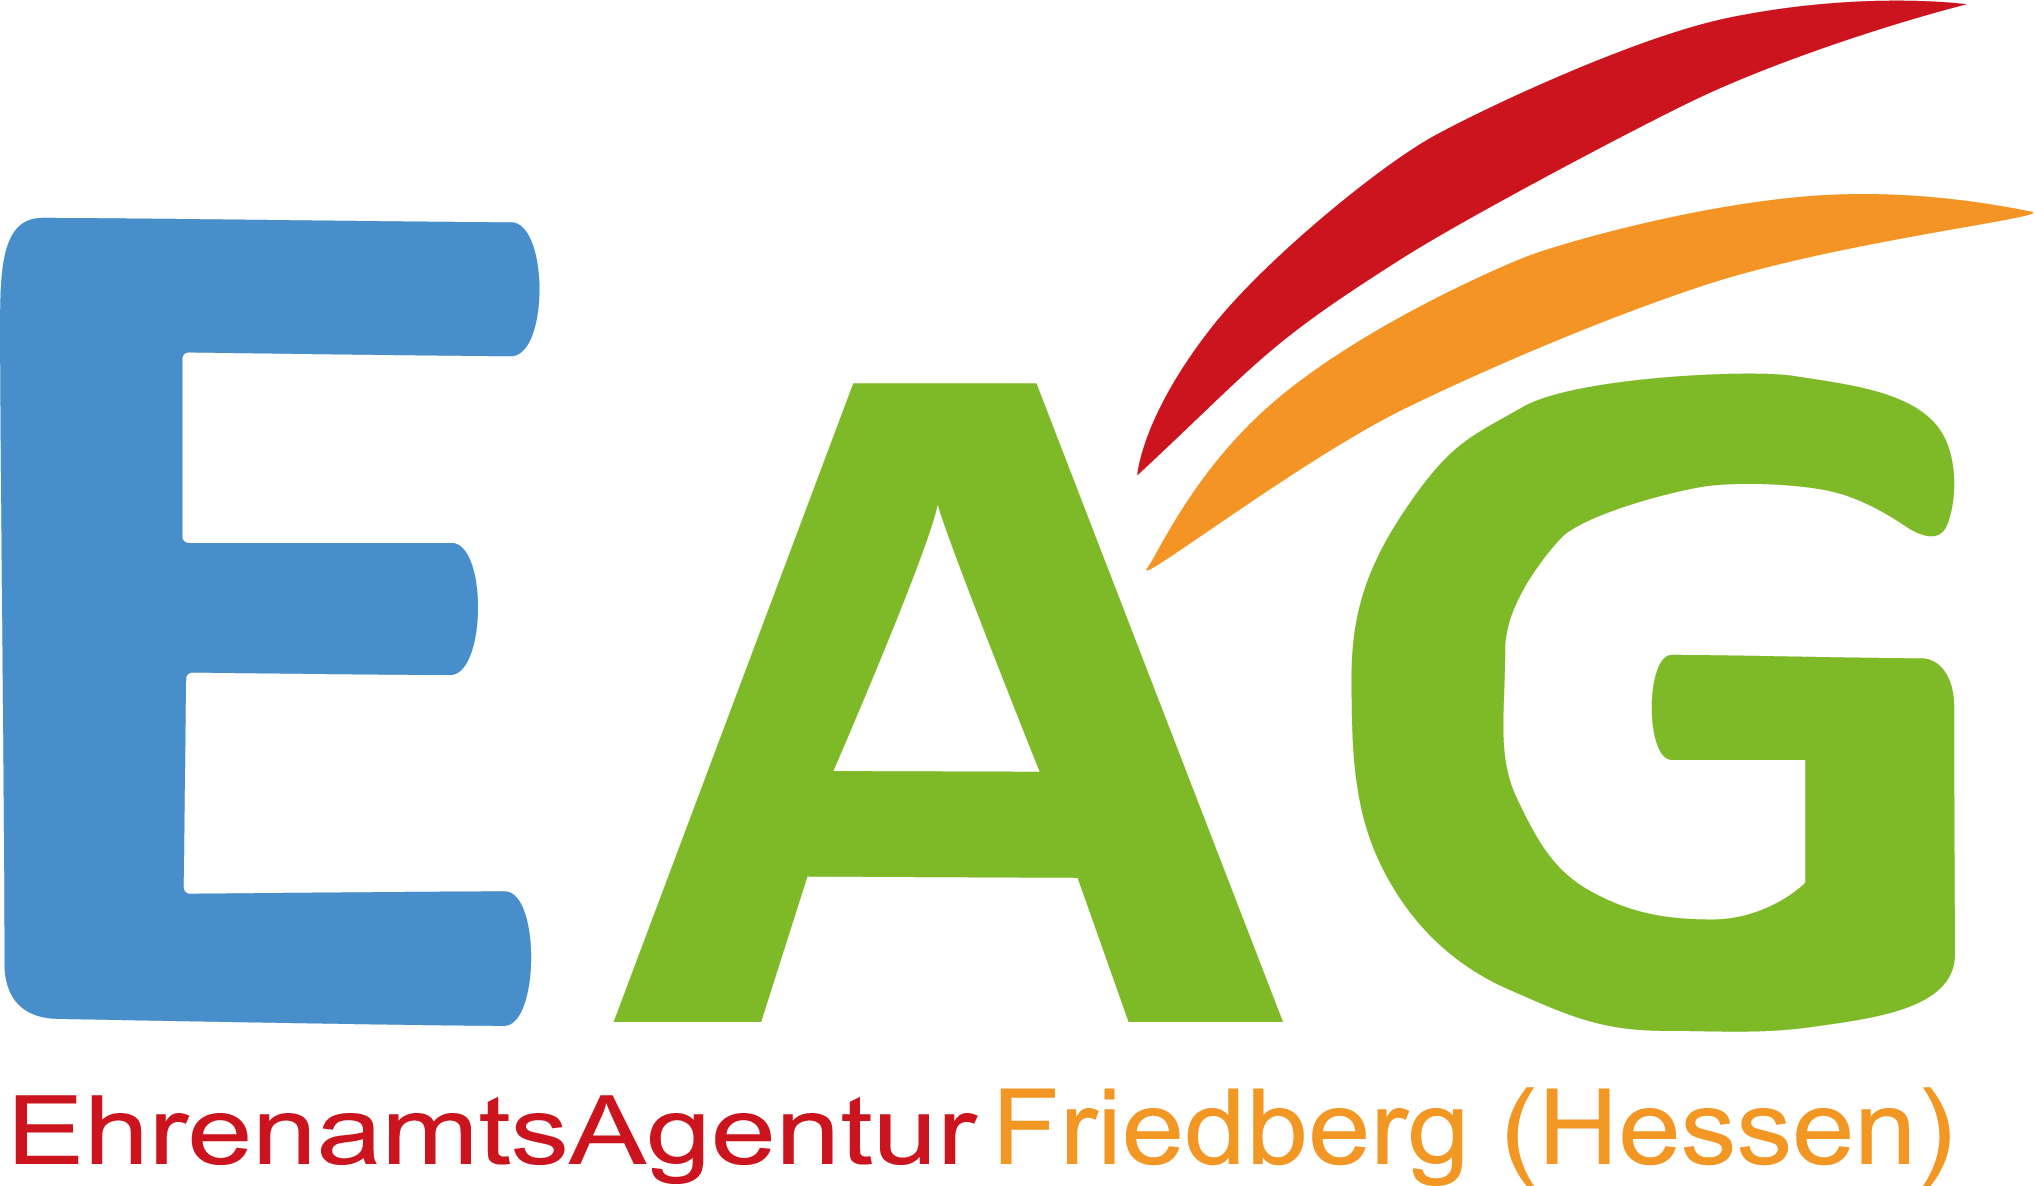 EAG Friedberg